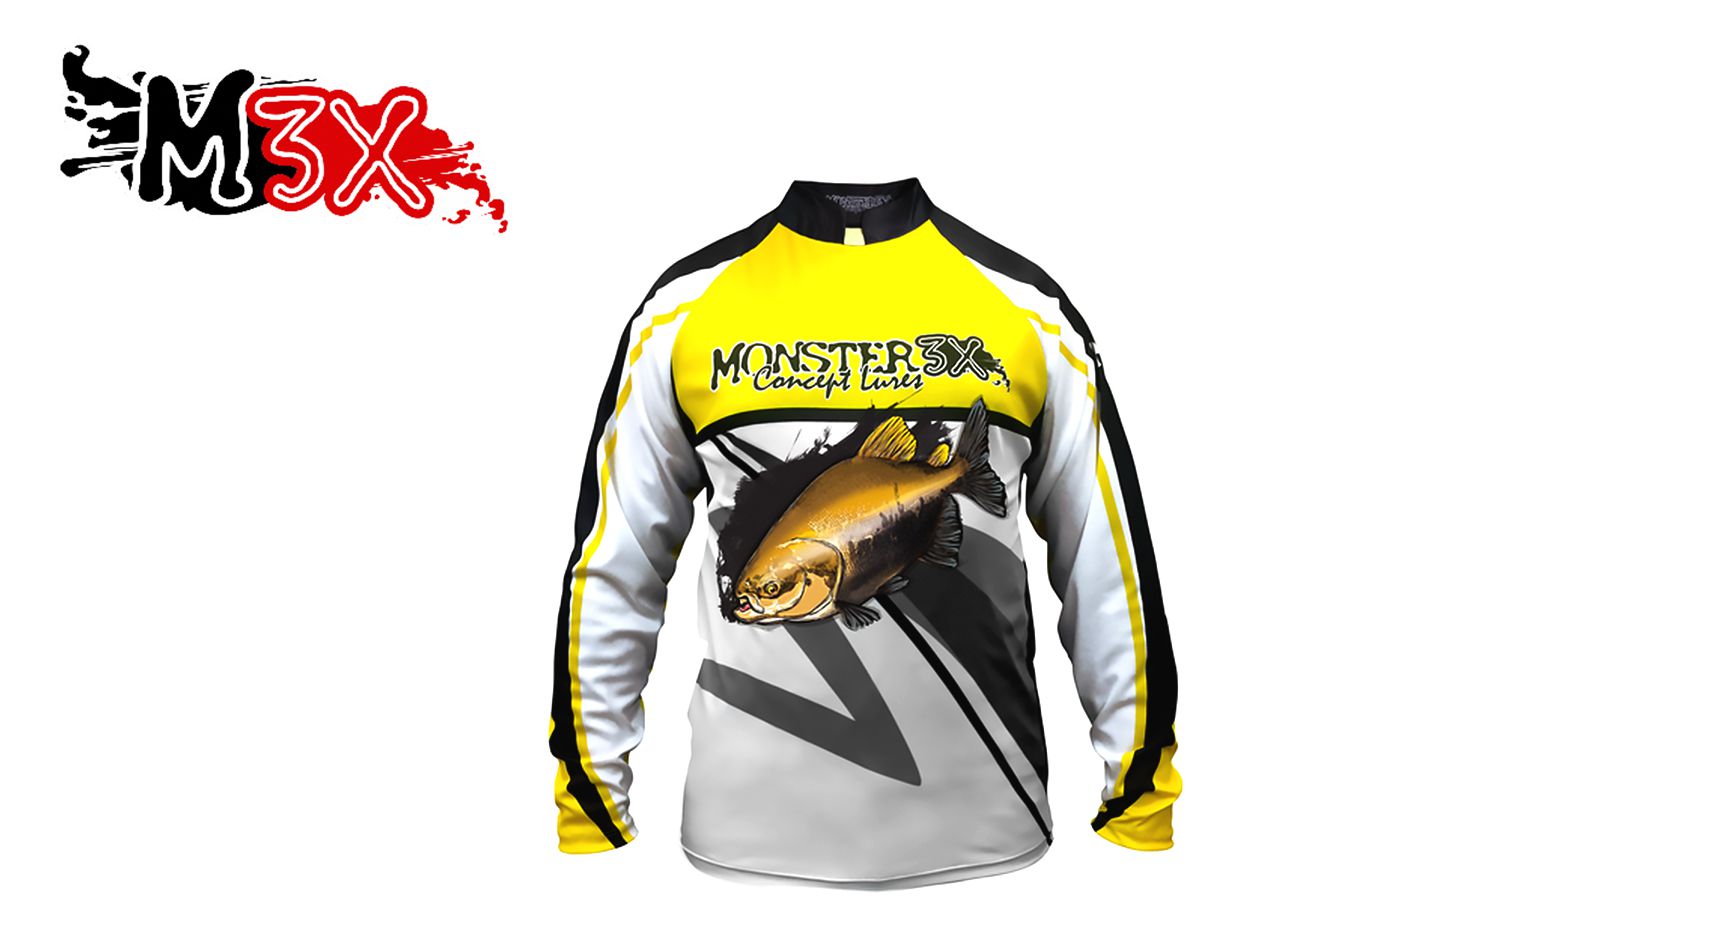 Camiseta de Pesca Proteção Solar New Fish 02 - Monster 3X - Life Pesca